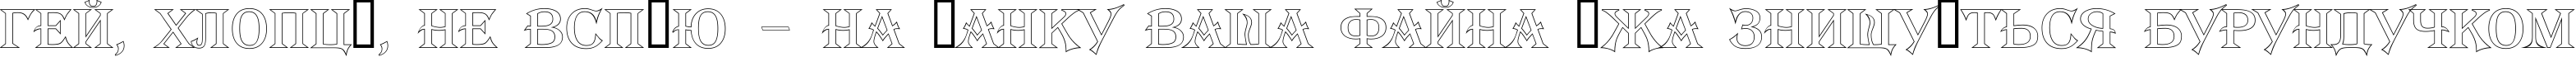 Пример написания шрифтом a_AlgeriusOtl текста на украинском